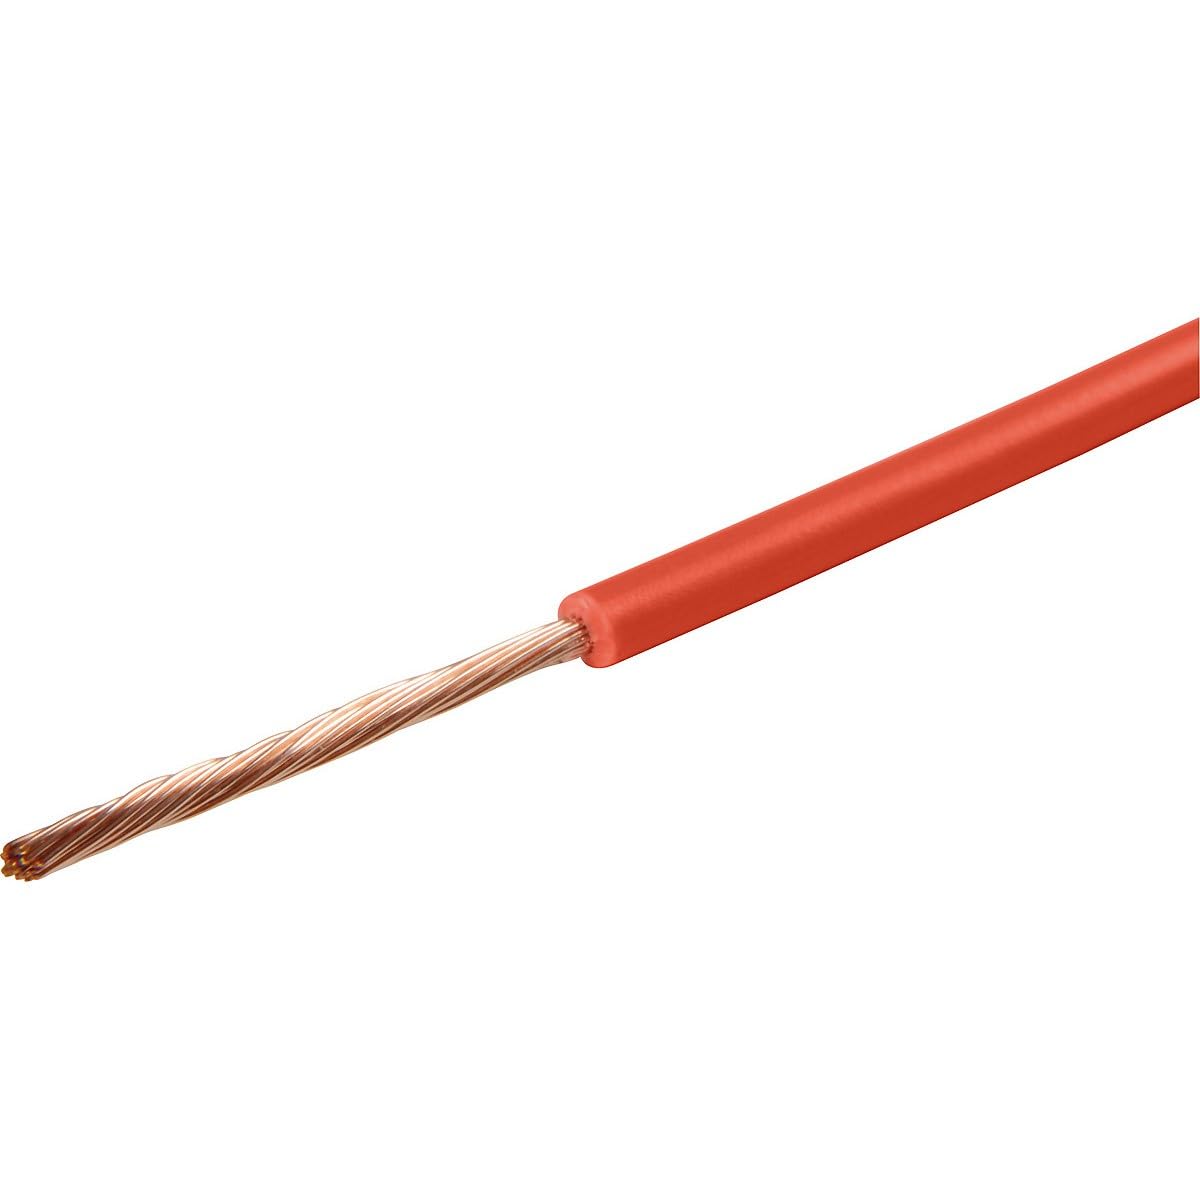 Kabel FLK 1,5 qmm, Rolle à 50 Meter rot von Import